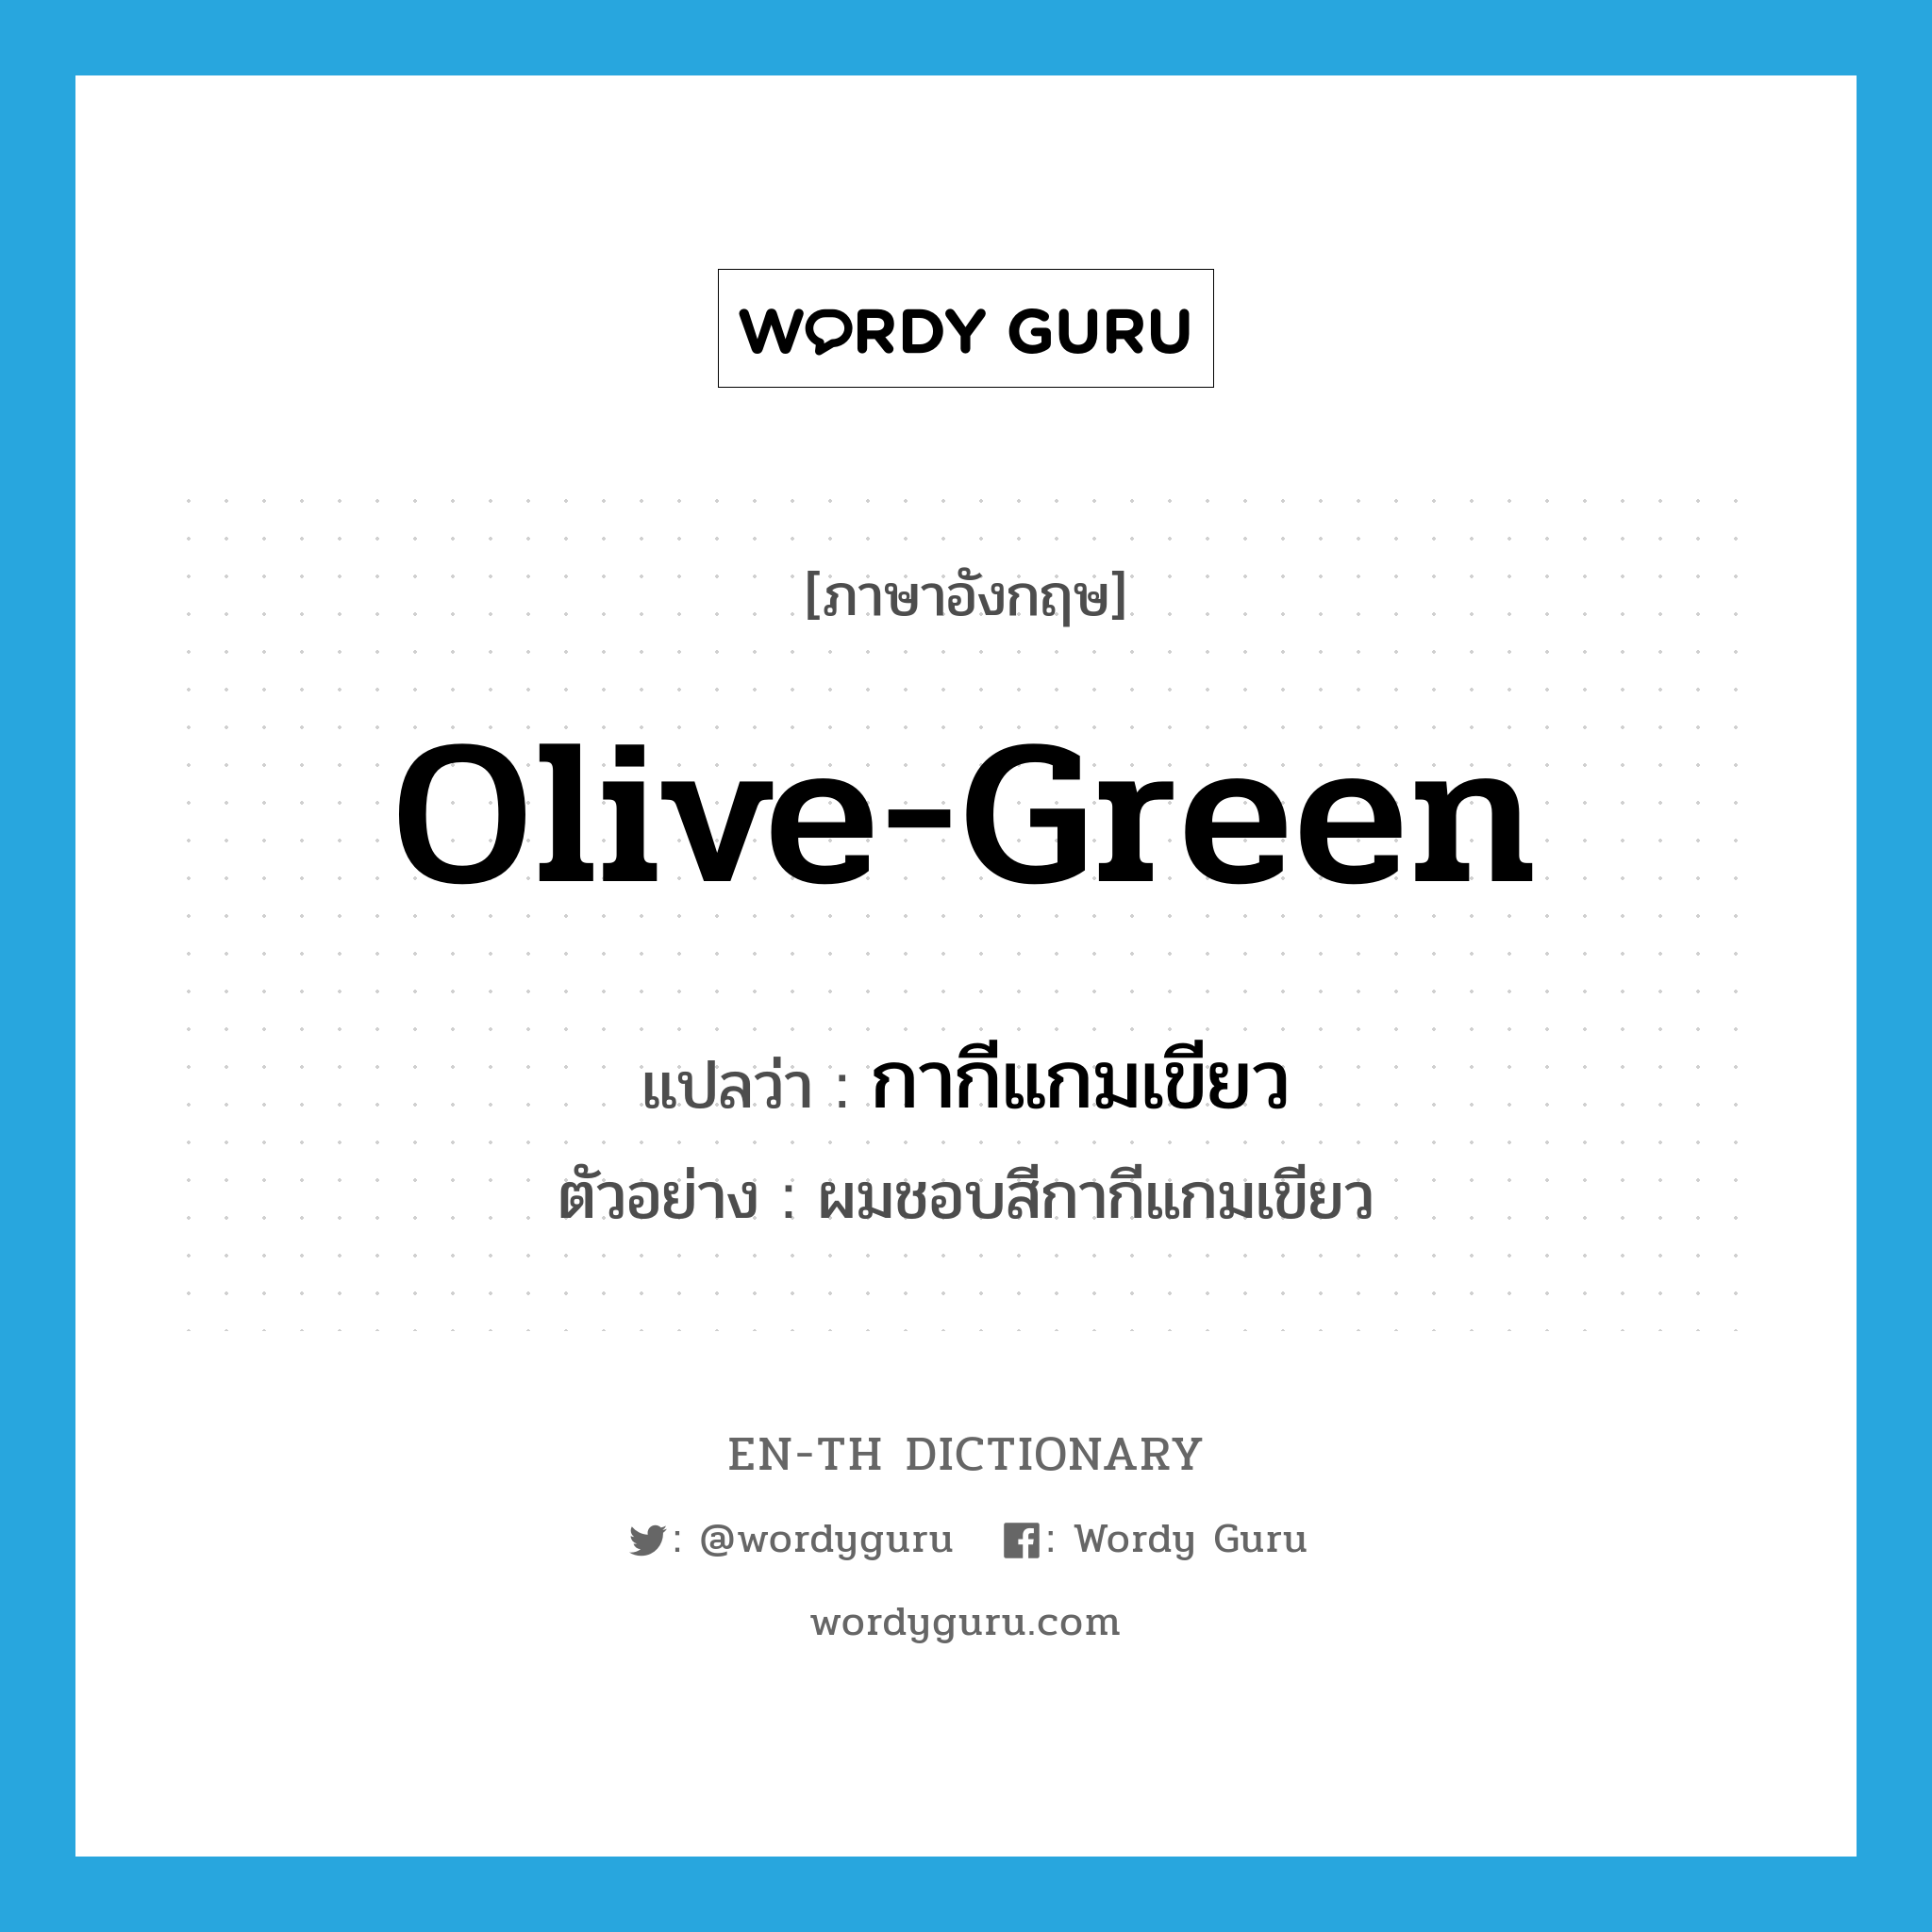 กากีแกมเขียว ภาษาอังกฤษ?, คำศัพท์ภาษาอังกฤษ กากีแกมเขียว แปลว่า olive-green ประเภท N ตัวอย่าง ผมชอบสีกากีแกมเขียว หมวด N